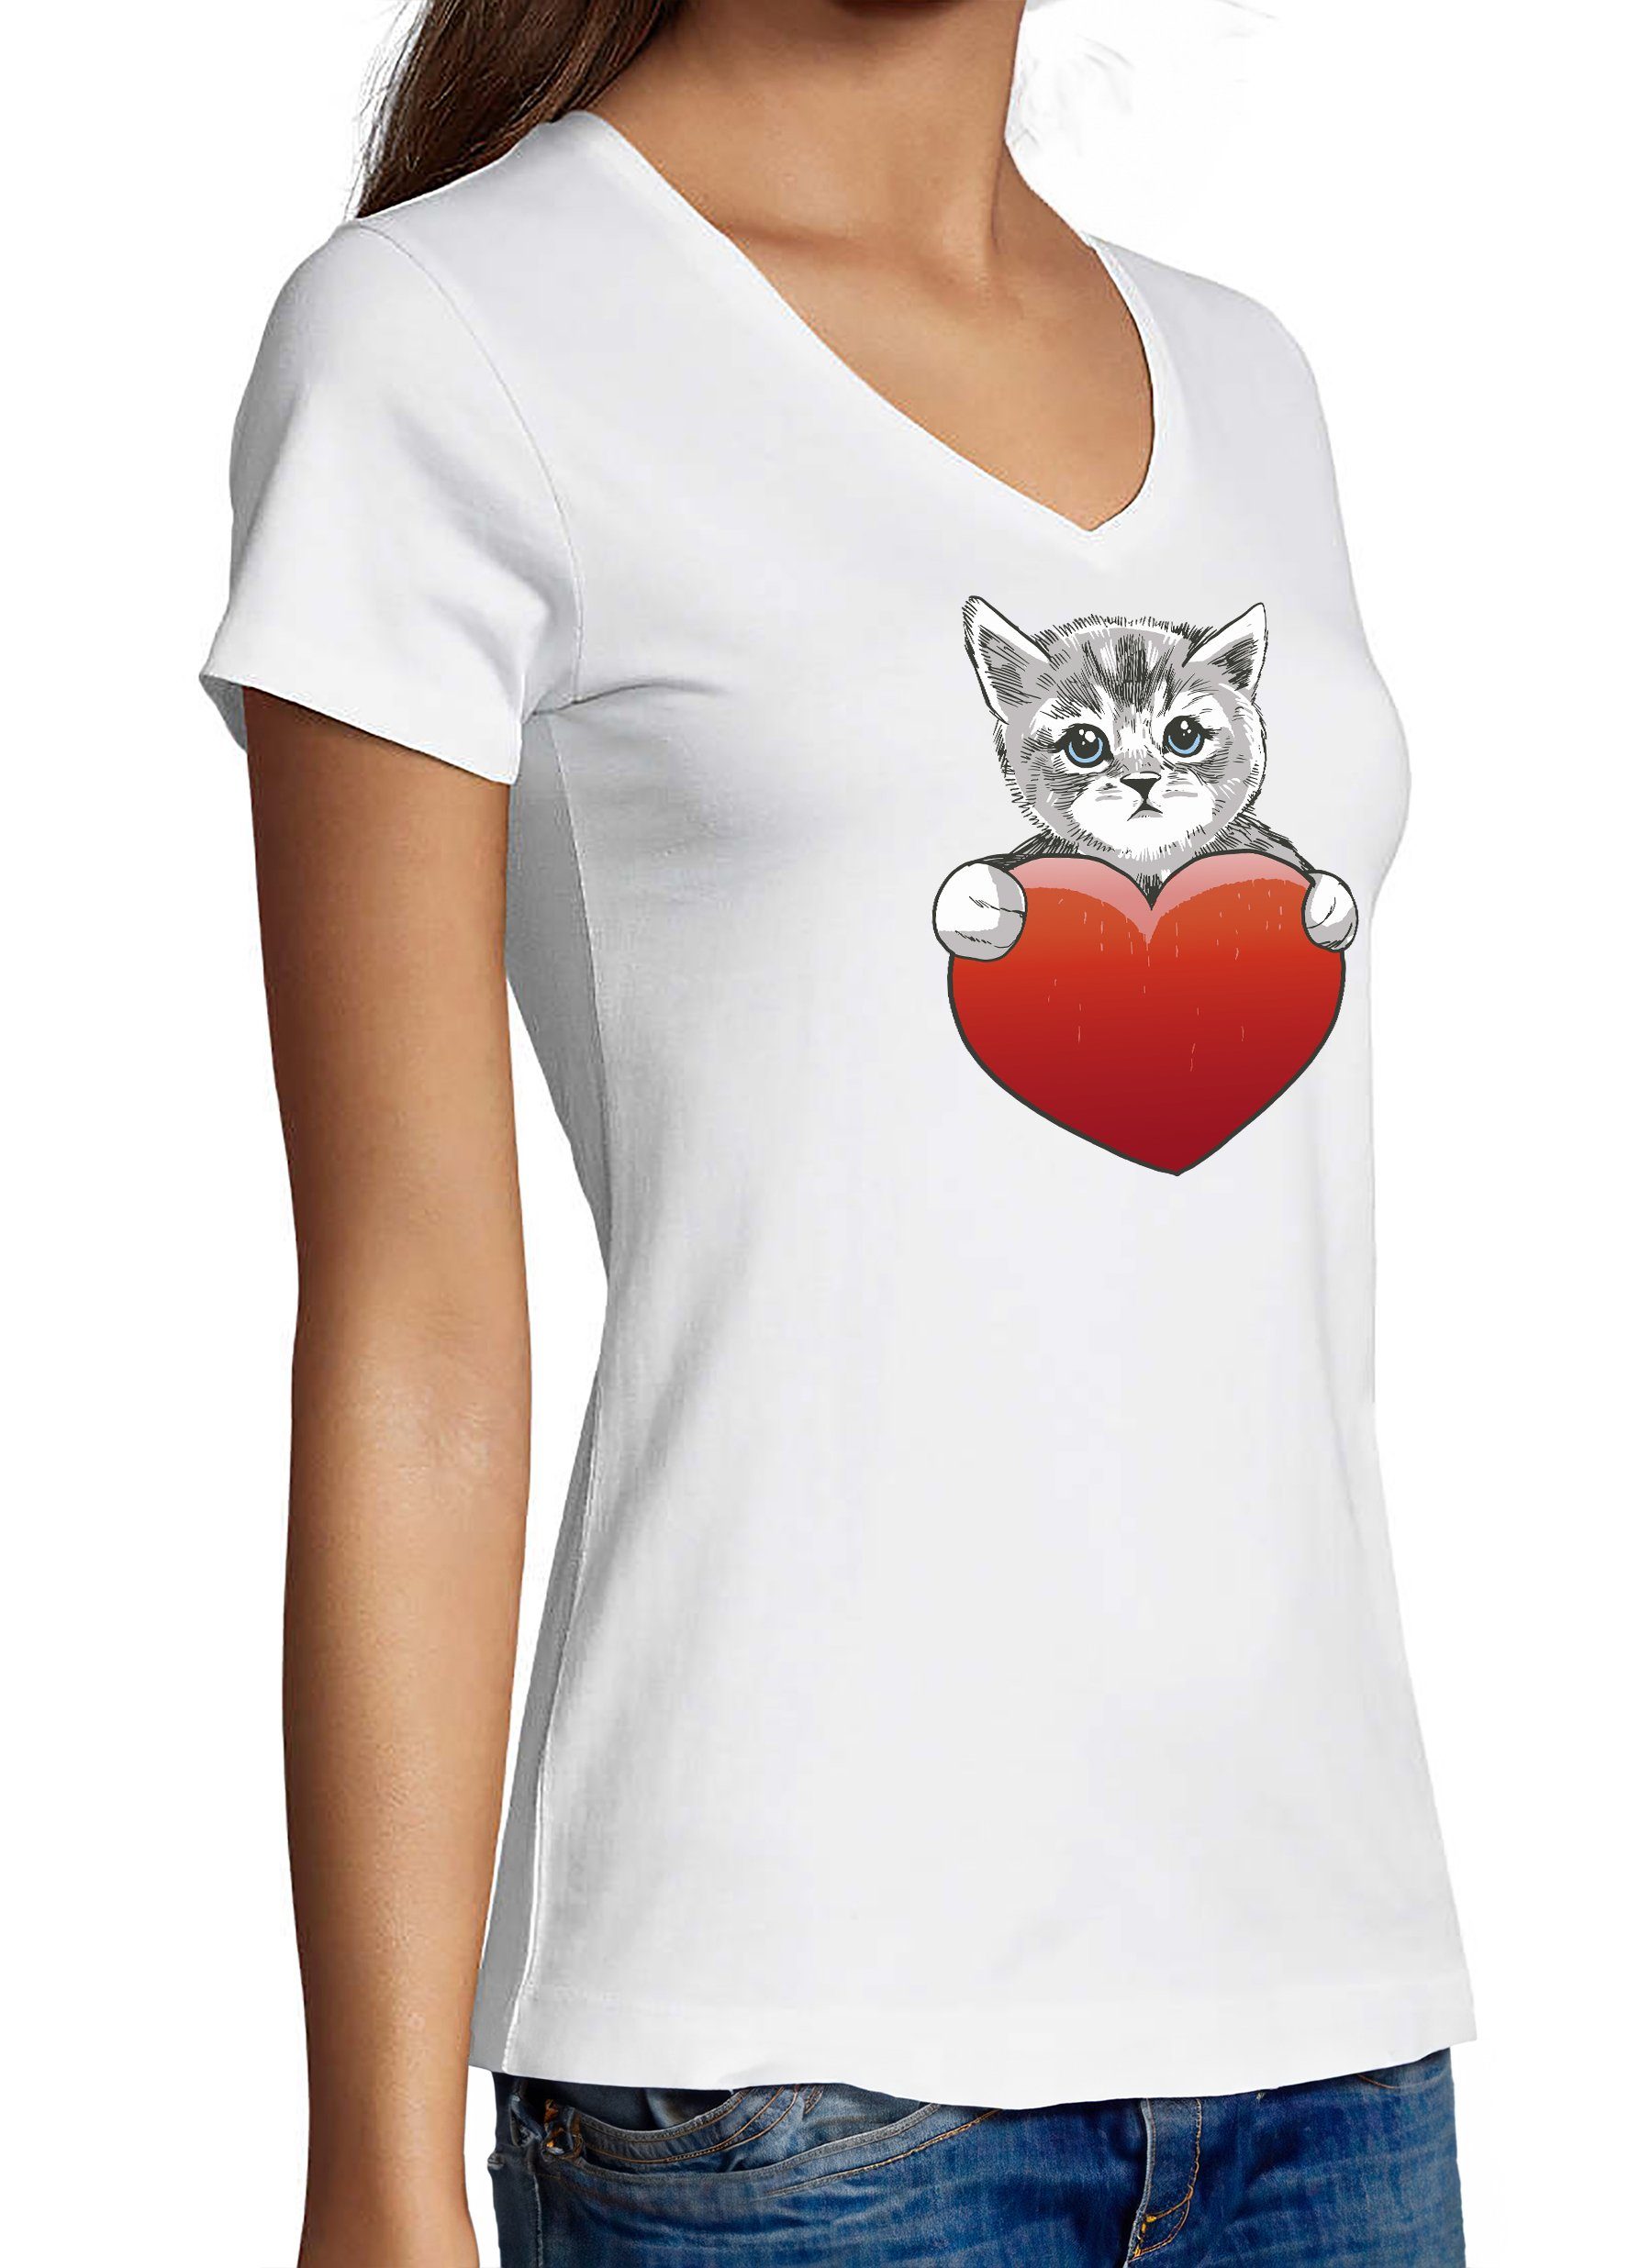 Katzen weiss mit Damen i120 mit Aufdruck, T-Shirt Shirt Baumwollshirt Katze Print Herz Slim MyDesign24 - rotem bedruckt Fit,